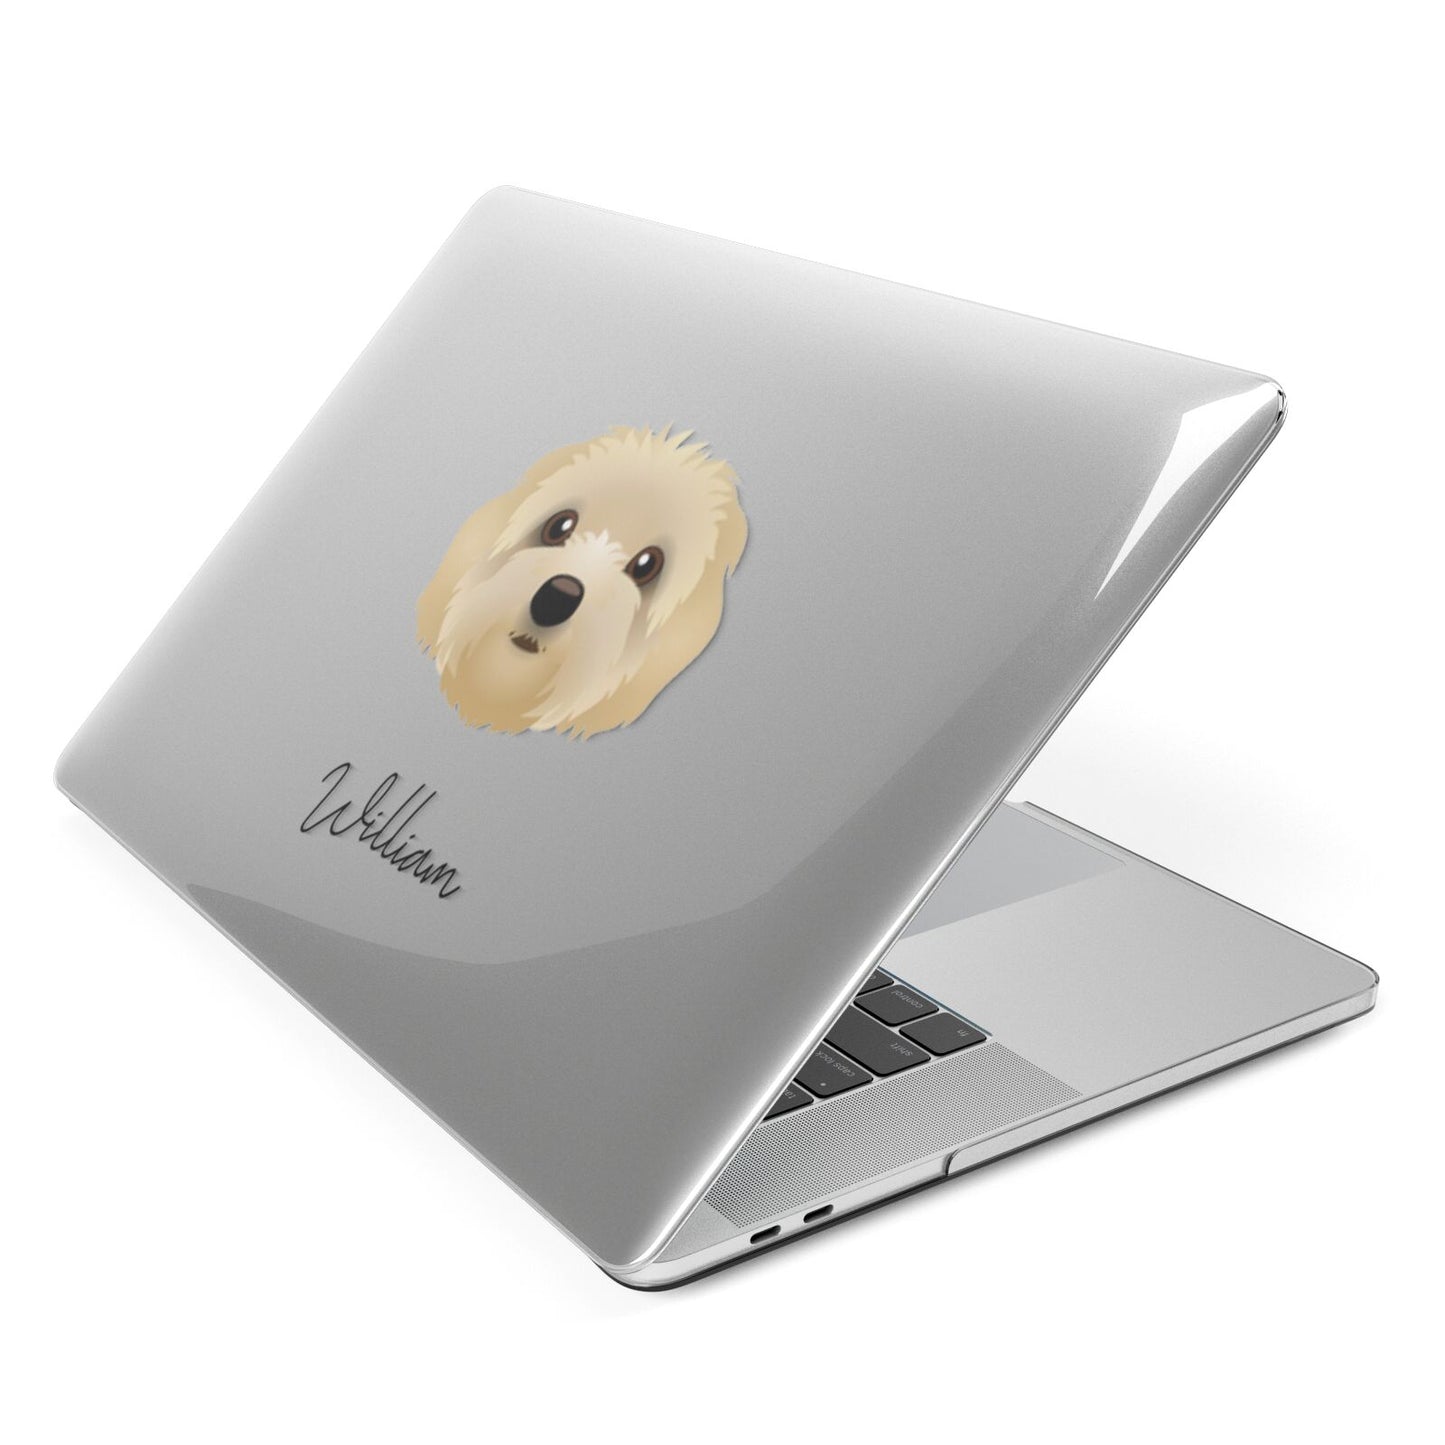 Terri Poo Personalised Apple MacBook Case Side View